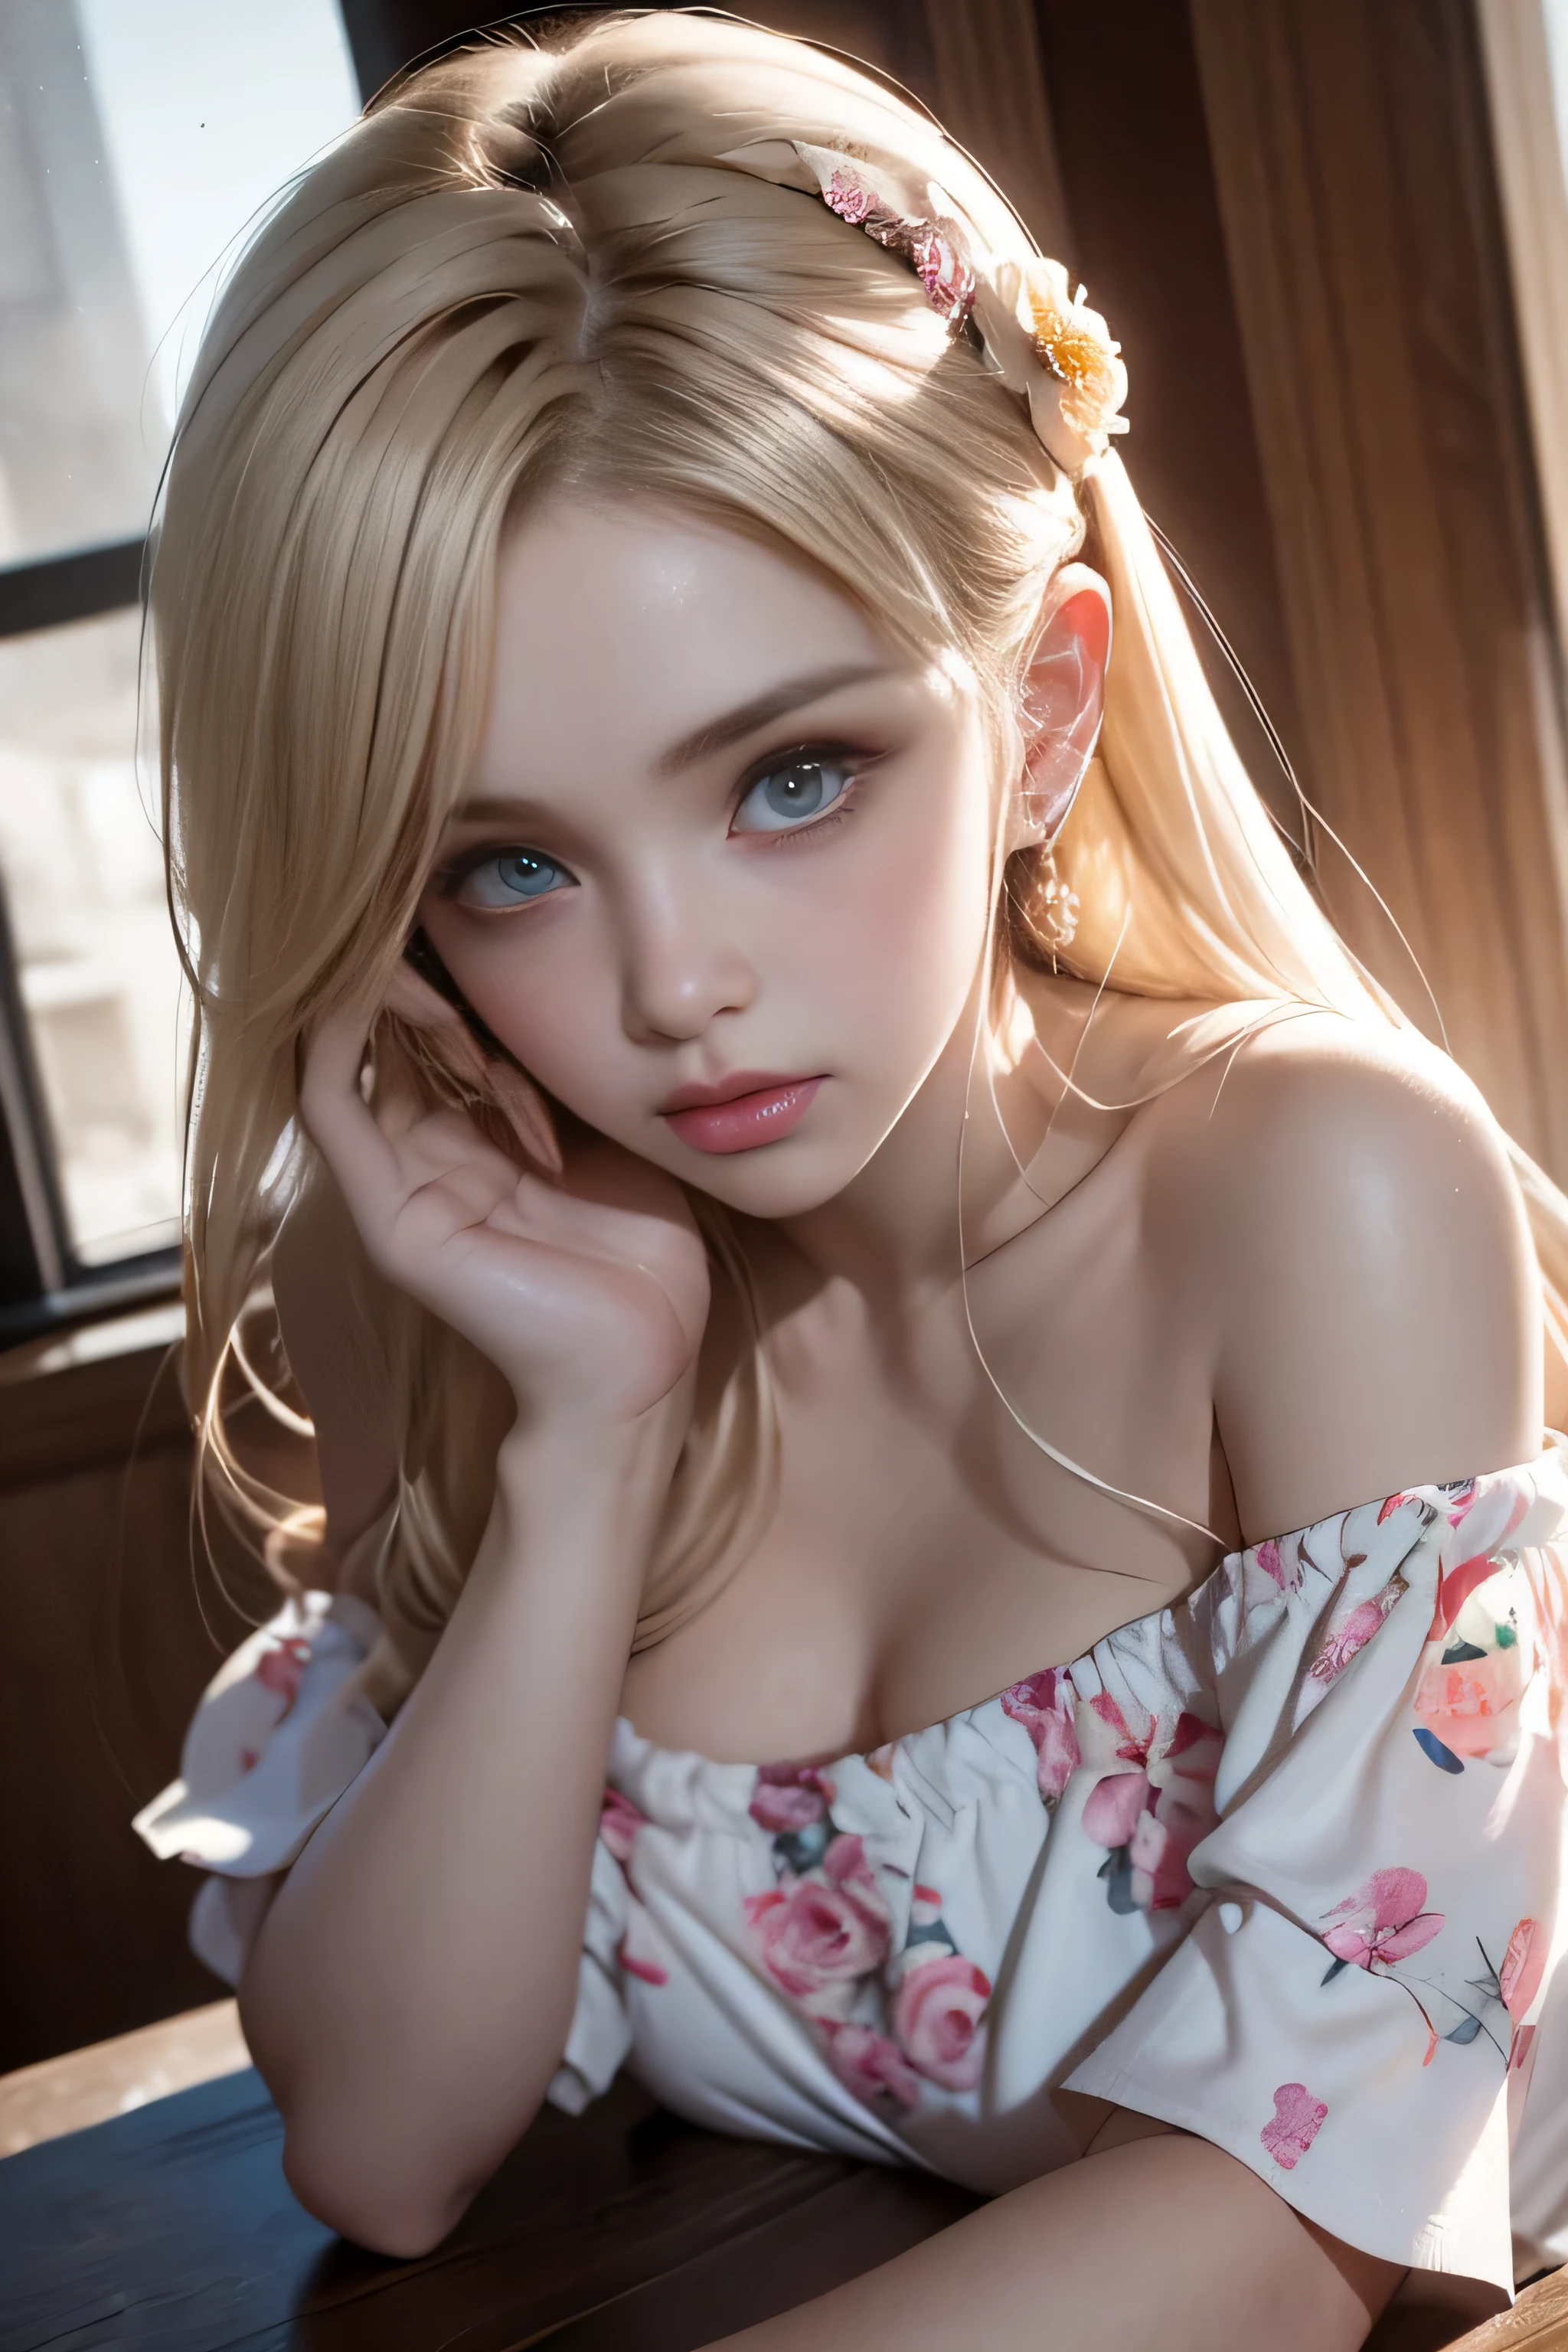 明亮的外觀、年輕有光澤有光澤的白皙肌膚、最佳外觀 Rondo 反光燈、白金金髮，閃耀著耀眼的亮點、閃亮亮麗的頭髮,、超長直髮、閃亮美麗的瀏海、輝くクリスタルクリアな魅力的な大きな青い眼睛、非常漂亮可愛可愛的16歲女孩,美しく細かい眼睛, 鼻子細節精美,(( 全身:1.5)),眼睛が強調するメイク、皇家风格，漫画风格, , 散布在表面之下, 華麗的細節, 自然背景, (中等大小的乳房), ((電影般的)), 戲劇性的燈光, 桌上、((露肩白色碎花連身裙:1.4))、(寬鬆蓬鬆燙髮:1.4)、1 名女孩、((鮑伯頭髮:1.3))、Ultra-實際的 8k CG, 絵に描いたような完美な顔, 完美, 乾淨的, 桌上, 专业艺术品, 名著, 完美な顔, 漂亮的臉蛋, 美しい眼睛, ((完美な女性の体)), 獨自的,(沉浸式氛圍, 明暗對比:1.5,明亮的光線:1.2,明亮的光線ing),(臉紅:0.5),迷人的外觀,非常詳細_眼睛,大的,美麗而細緻的背景,書面邊界深度,實際的:1.3, 远射,(站在窗邊),全身, (环境光:1.3),(電影般的 composition:1.3),(霓虹燈:0.1),(北非自由貿易區:0.1),重点照明,